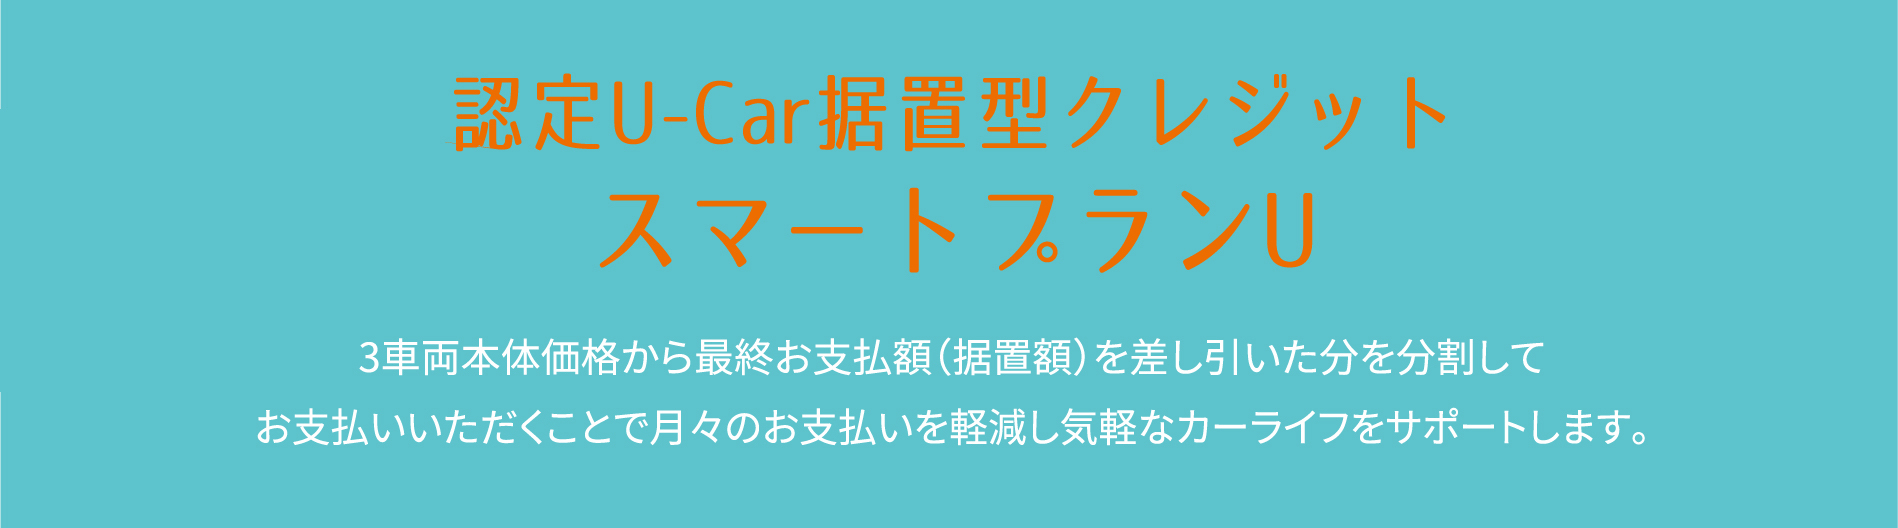 認定U-Car据置型クレジットスマートプランU 3車両本体価格から最終お支払額（据置額）を差し引いた分を分割してお支払いいただくことで月々のお支払いを軽減し気軽なカーライフをサポートします。